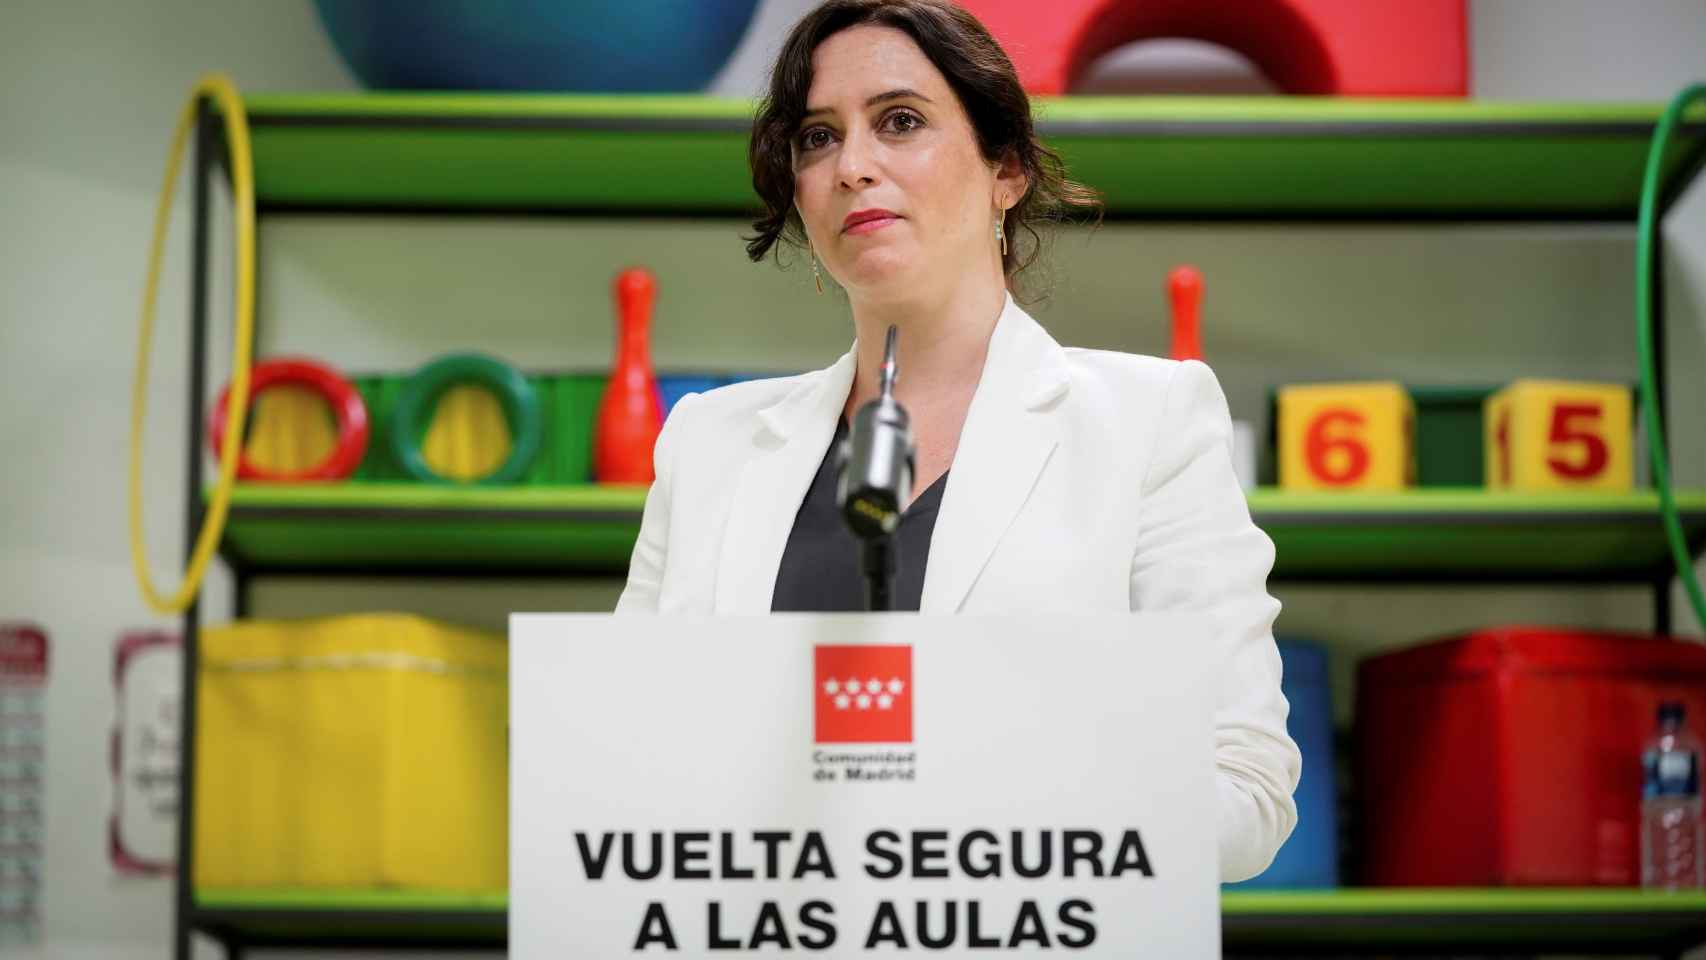 La presidenta de la Comunidad de Madrid, Isabel Díaz Ayuso, comparece en un colegio.